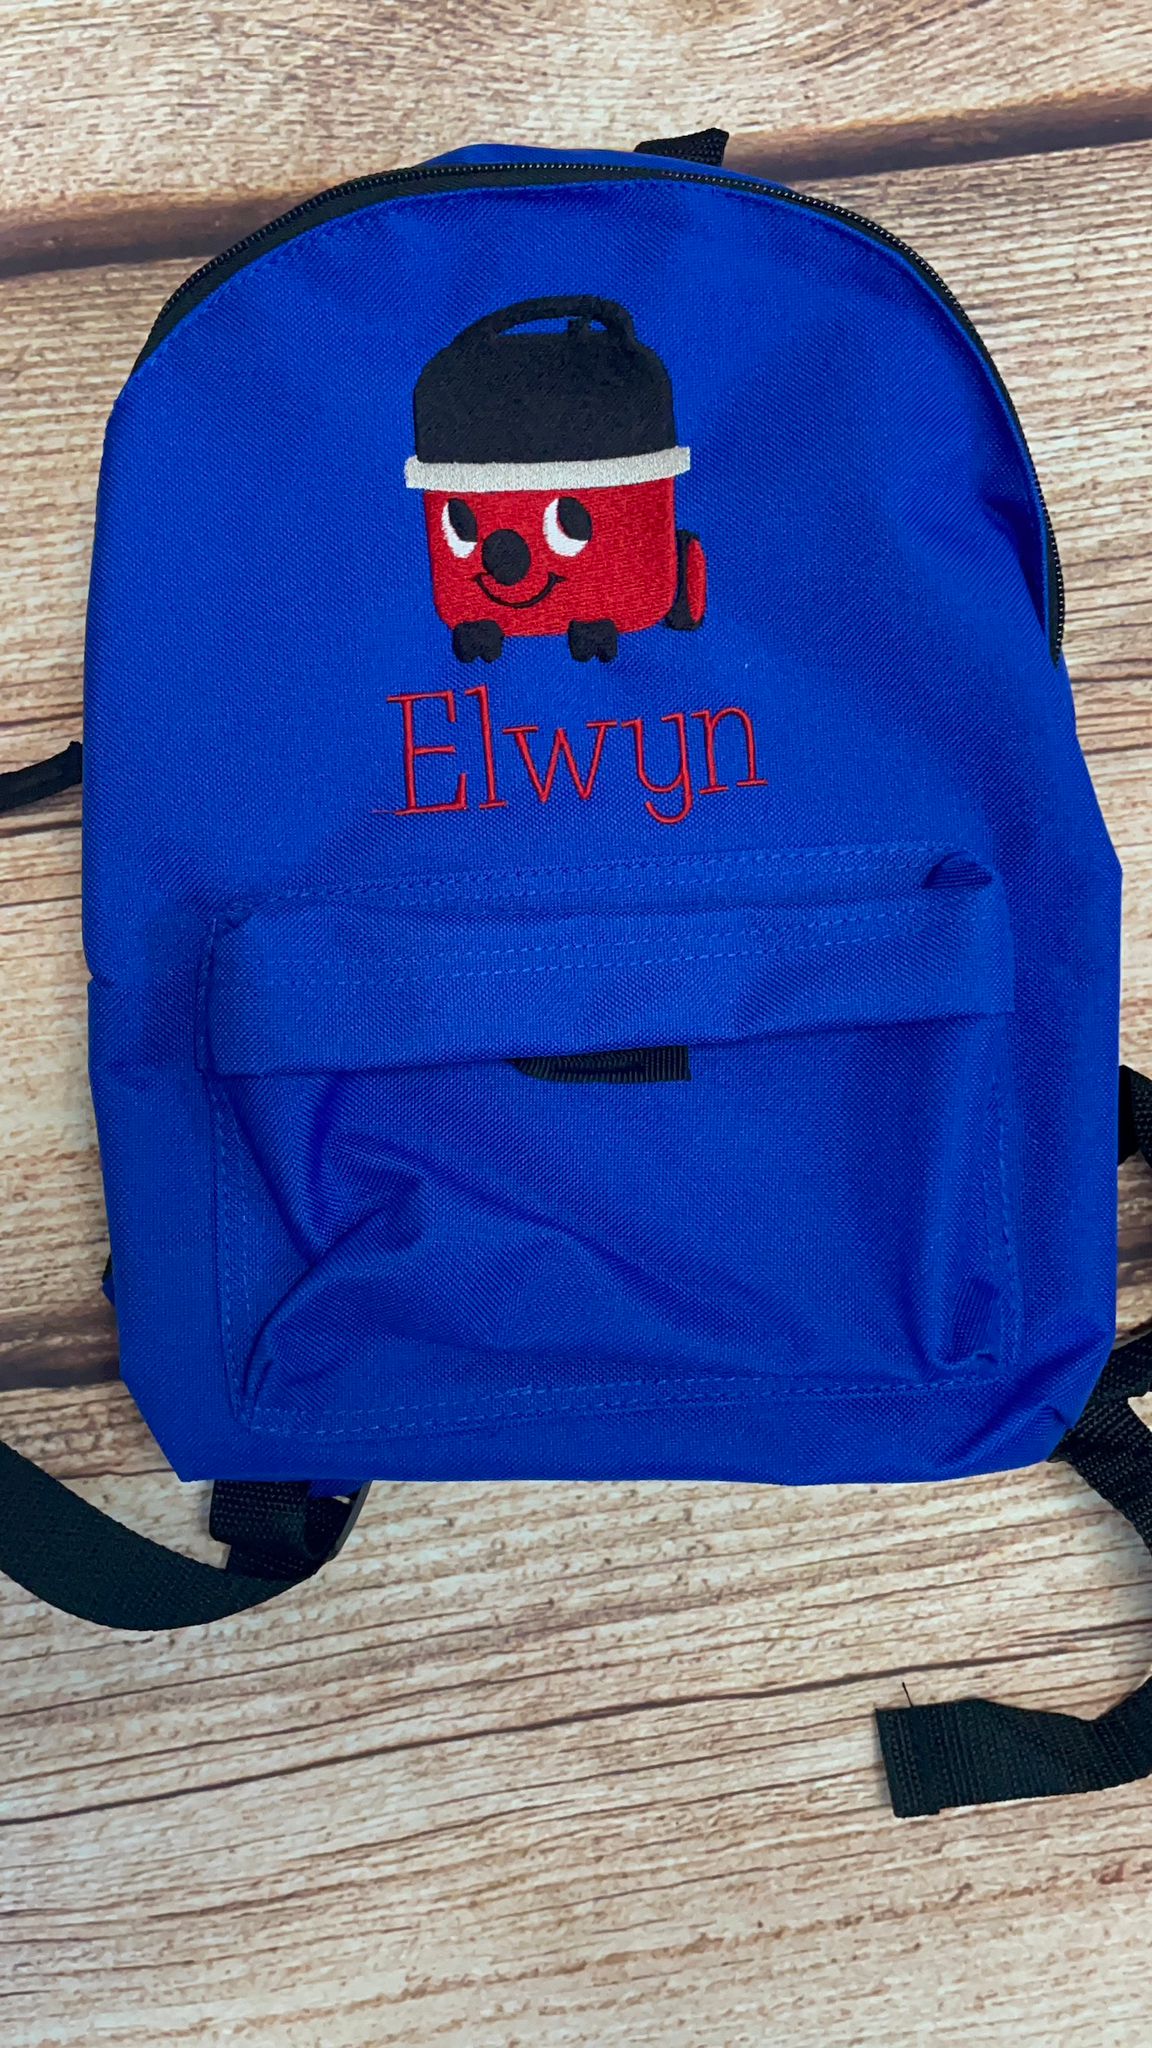 Henry hoover Nursery / Pre-school mini personalised rucksack